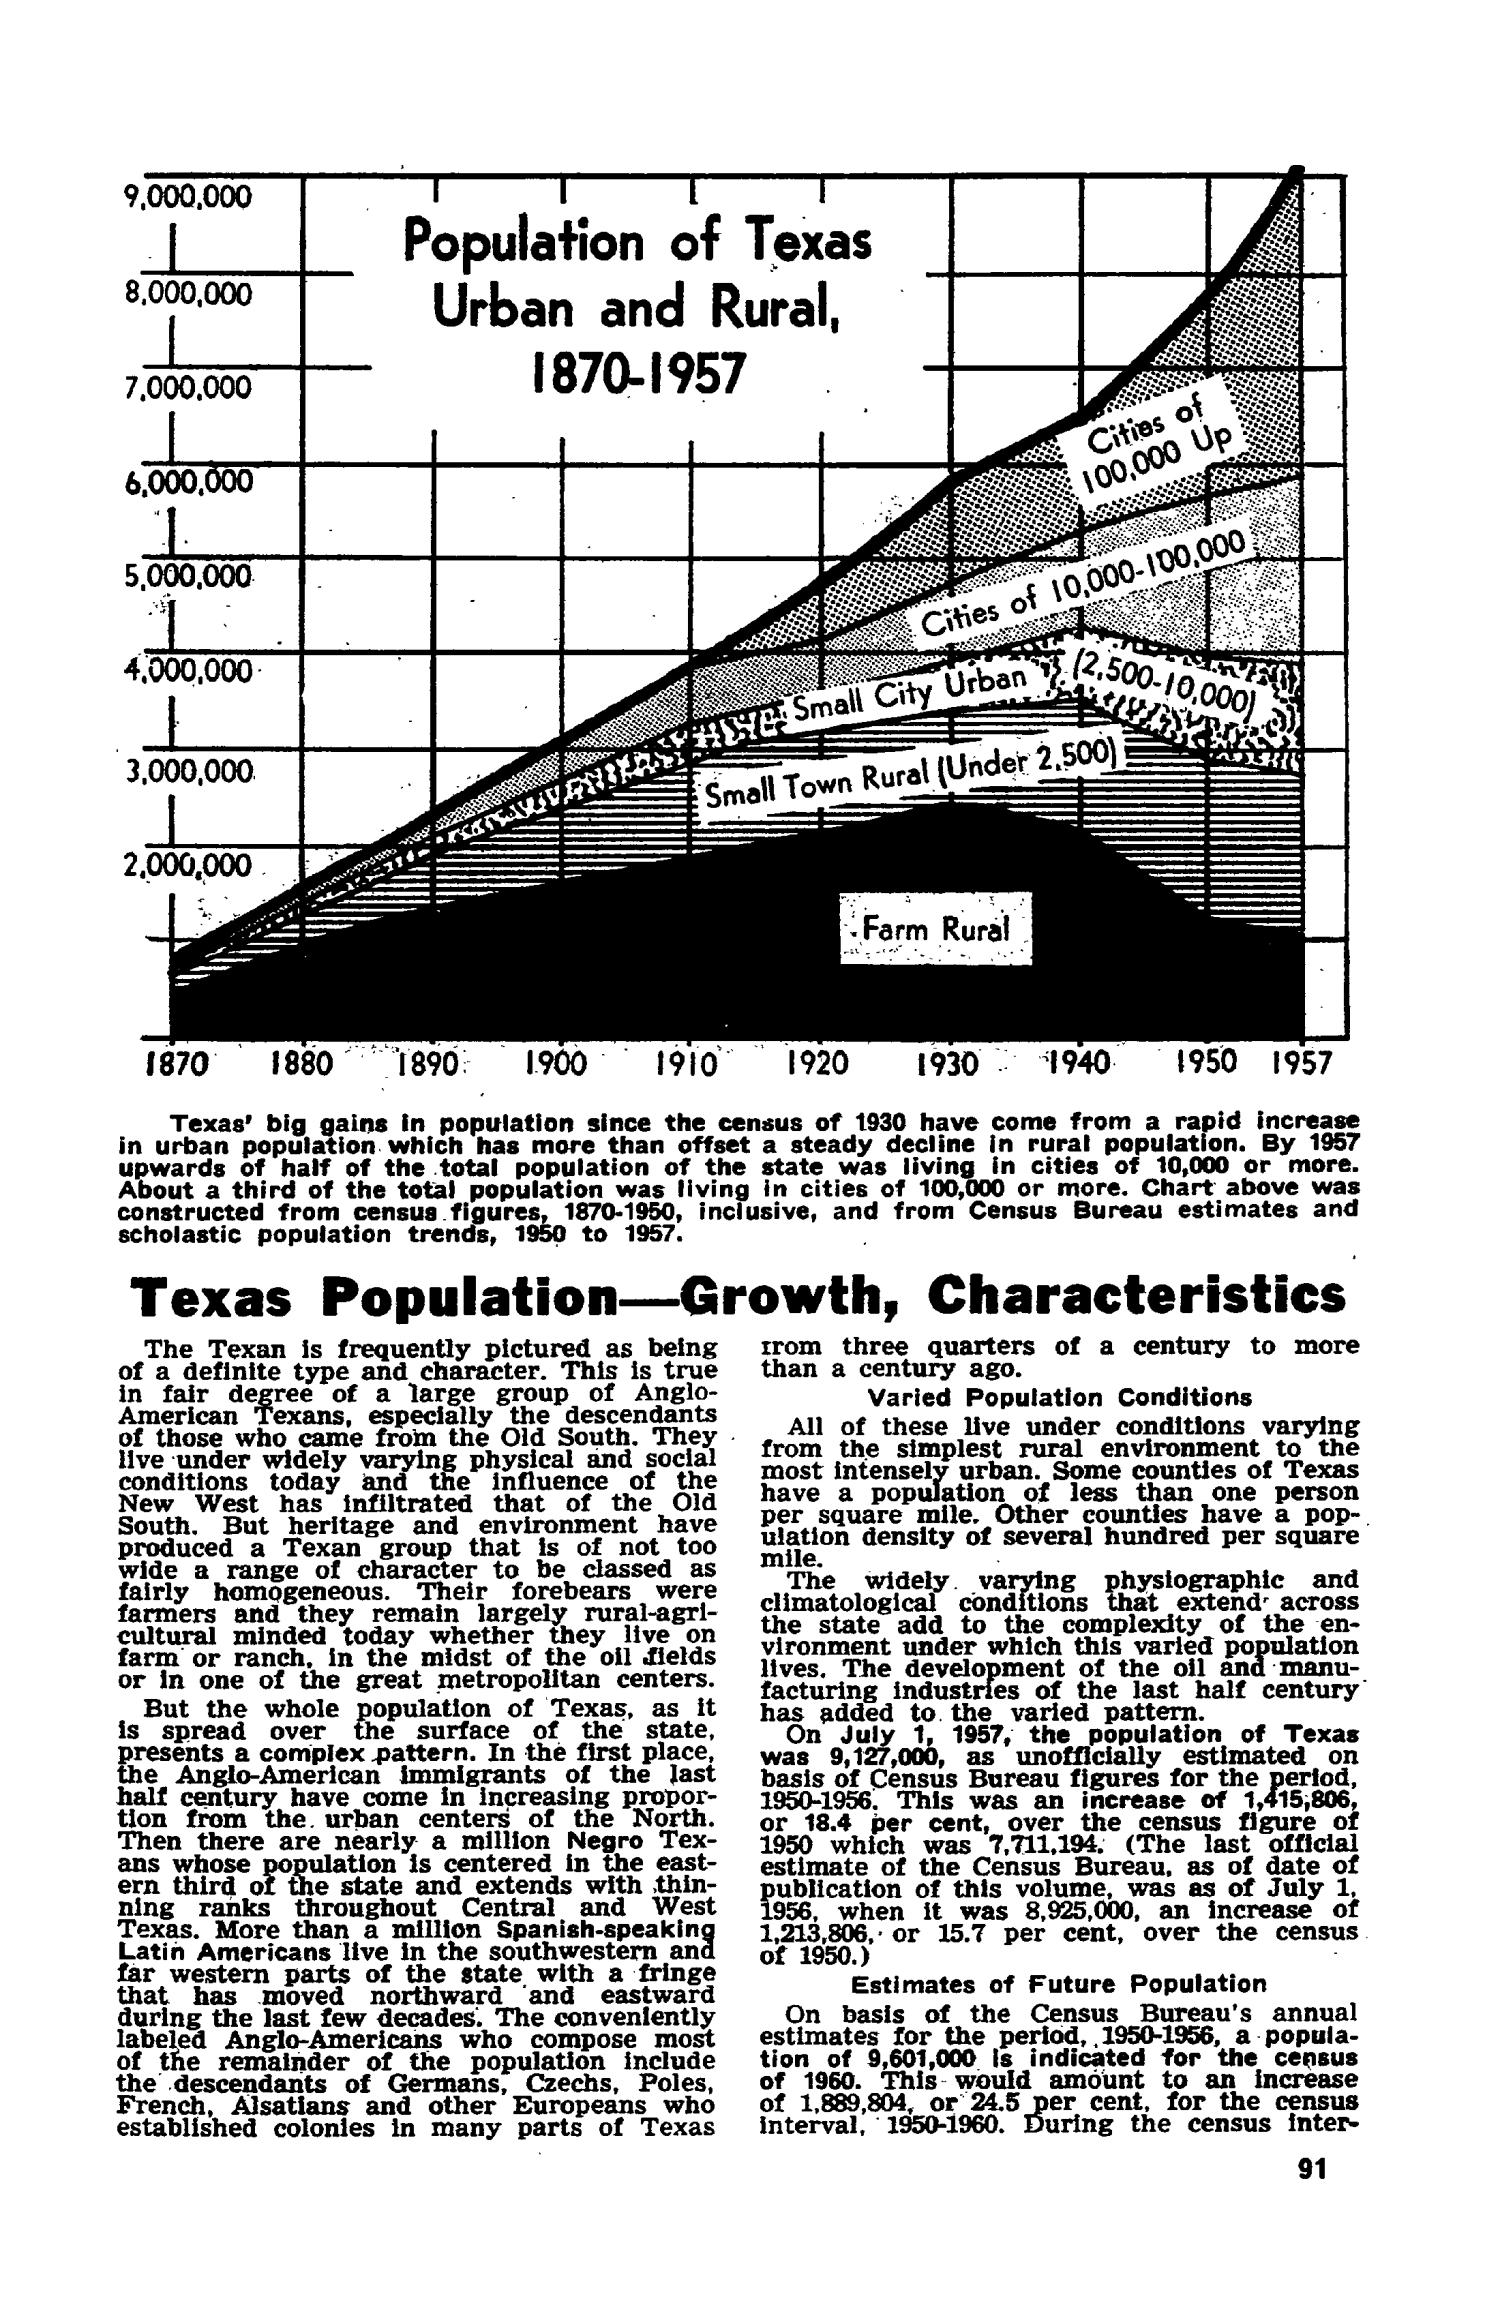 Texas Almanac, 1958-1959
                                                
                                                    91
                                                